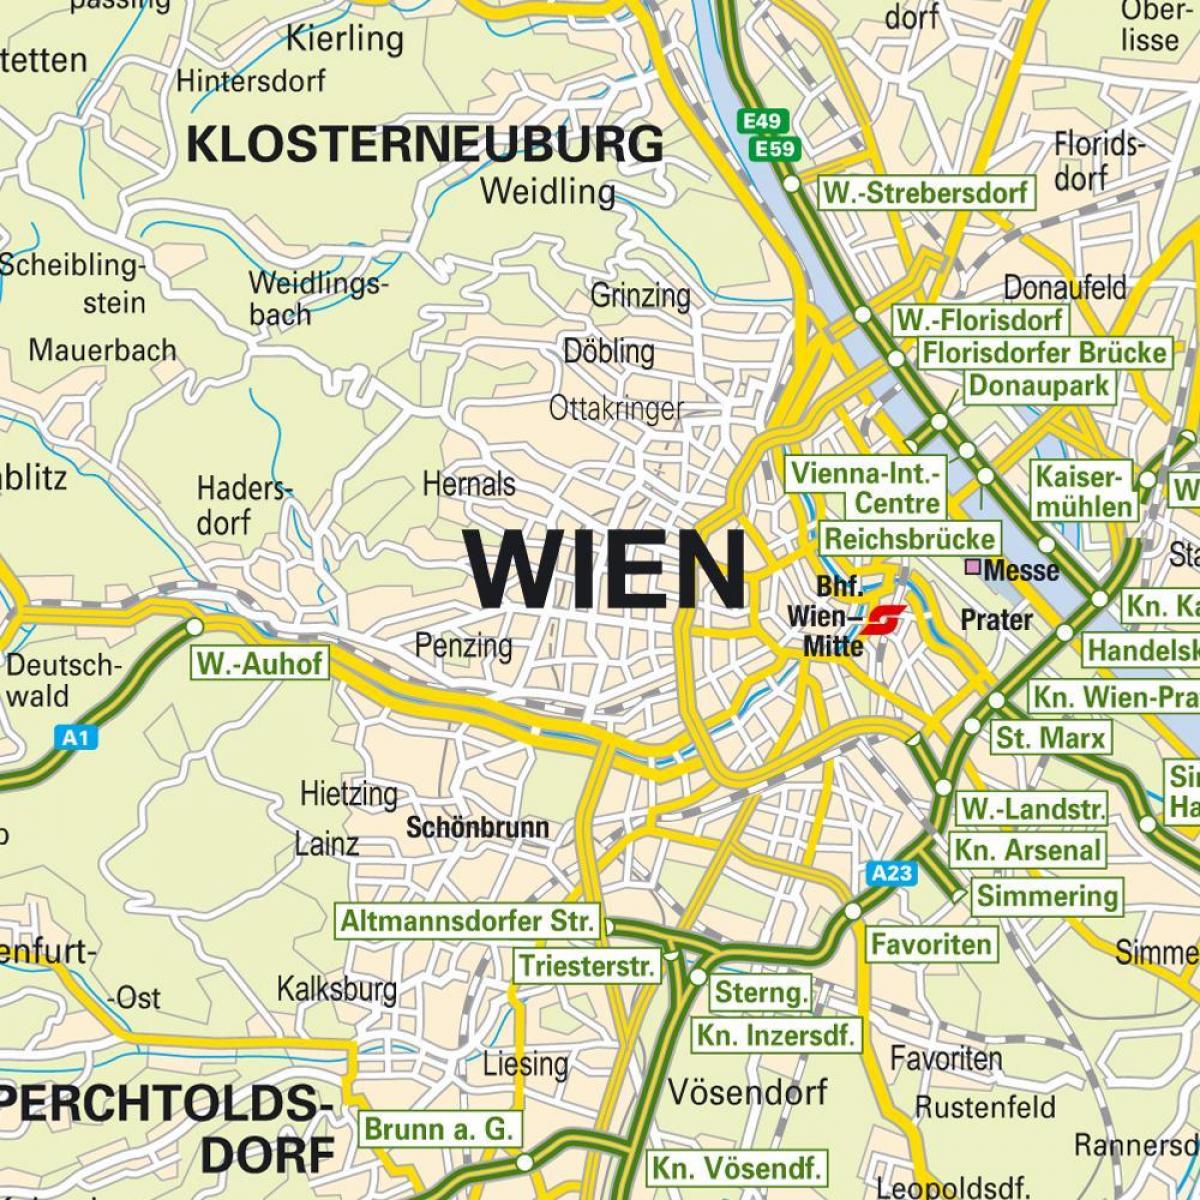 hartë që tregon Vjenë